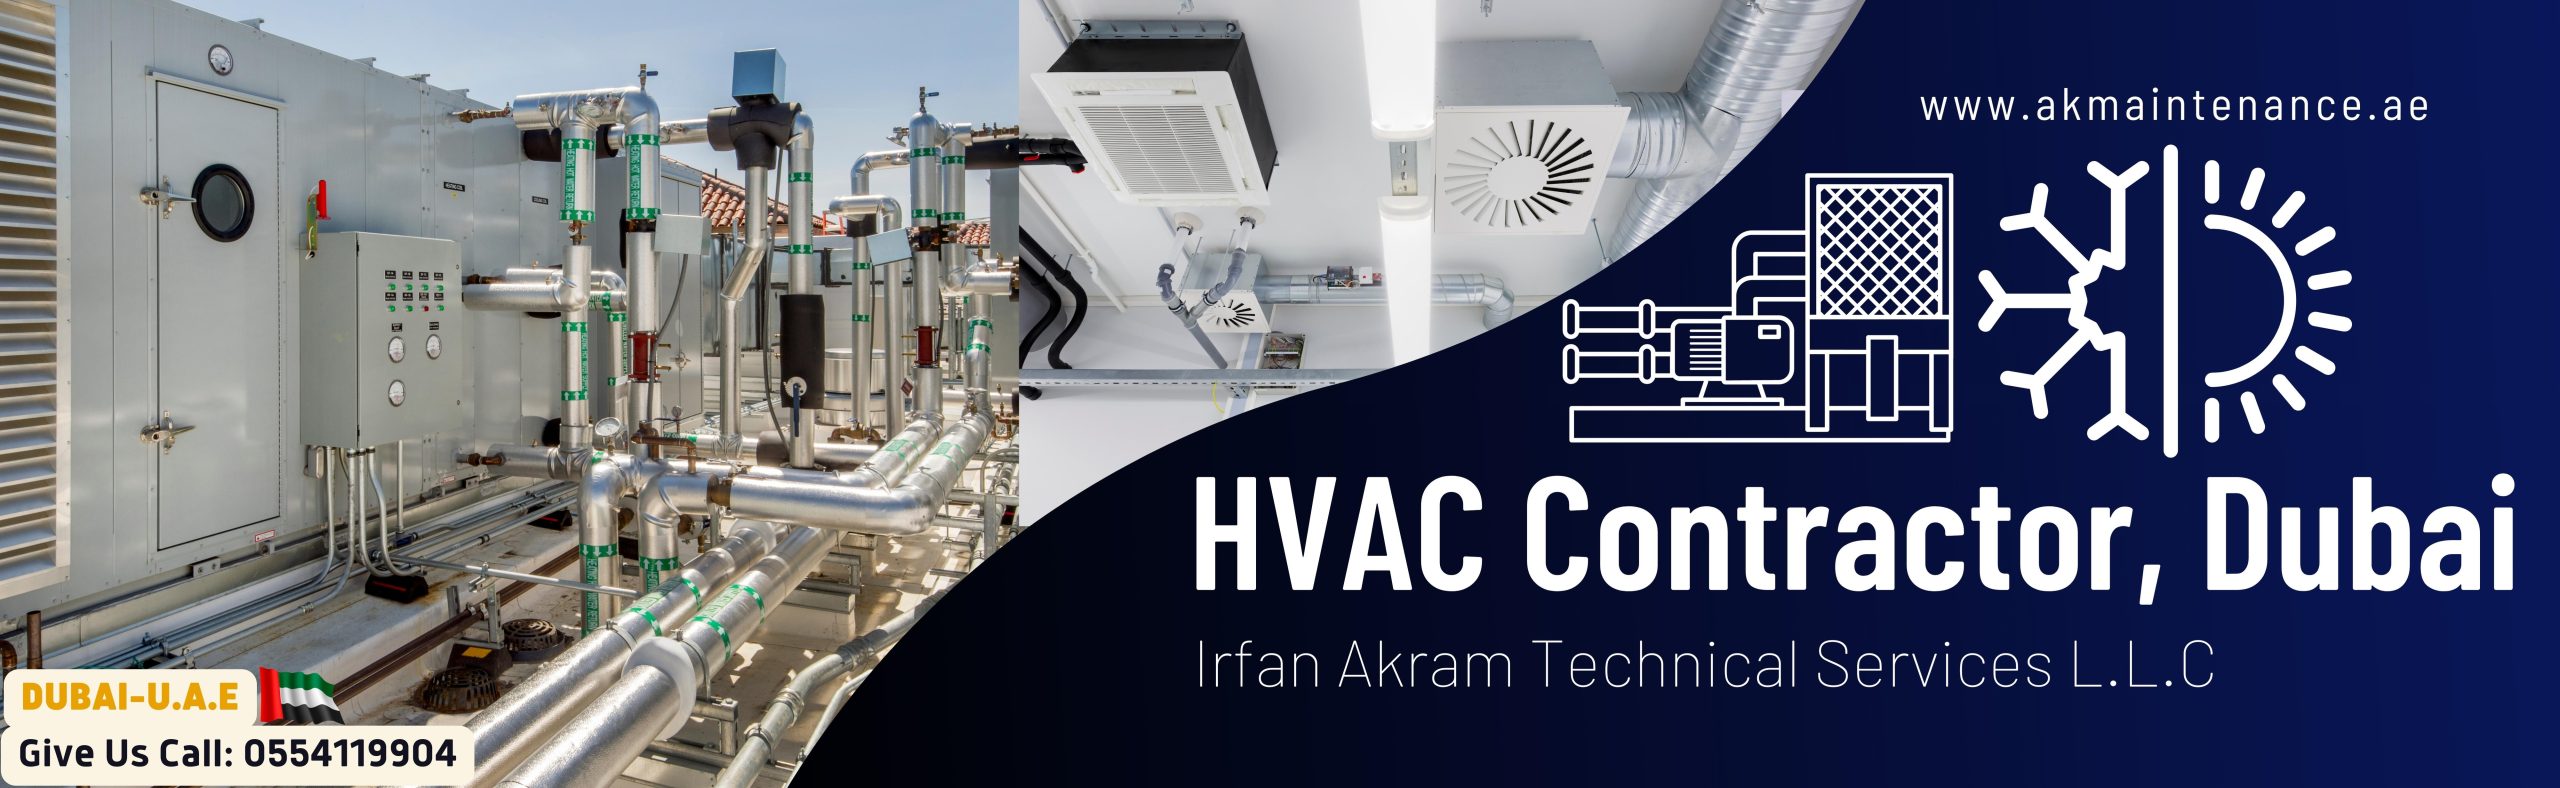 HVAC Contactors in Dubai